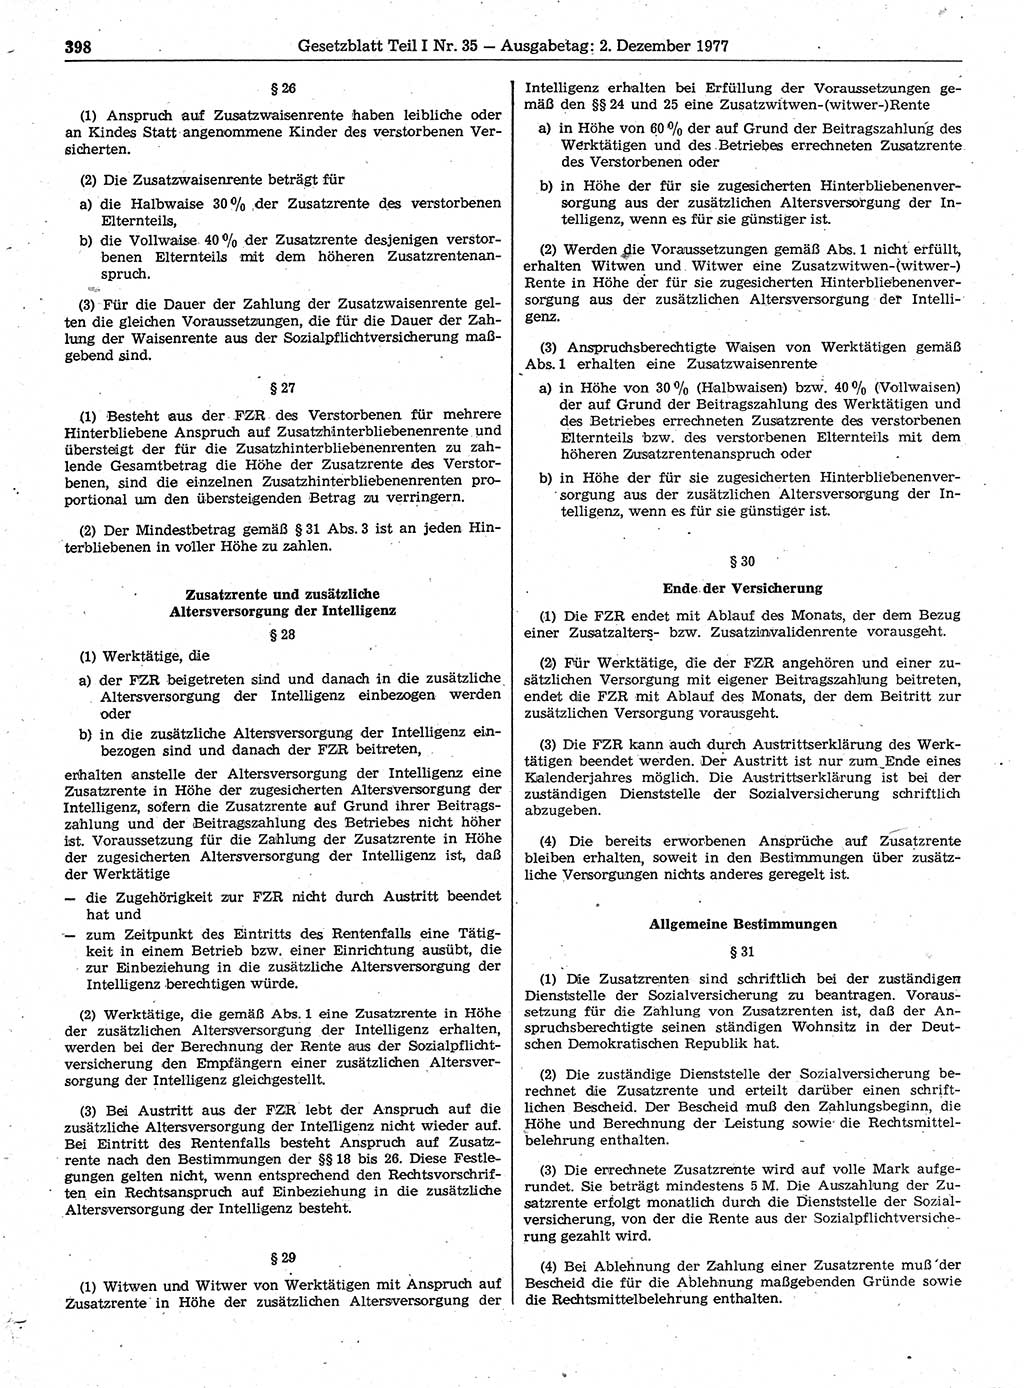 Gesetzblatt (GBl.) der Deutschen Demokratischen Republik (DDR) Teil Ⅰ 1977, Seite 398 (GBl. DDR Ⅰ 1977, S. 398)